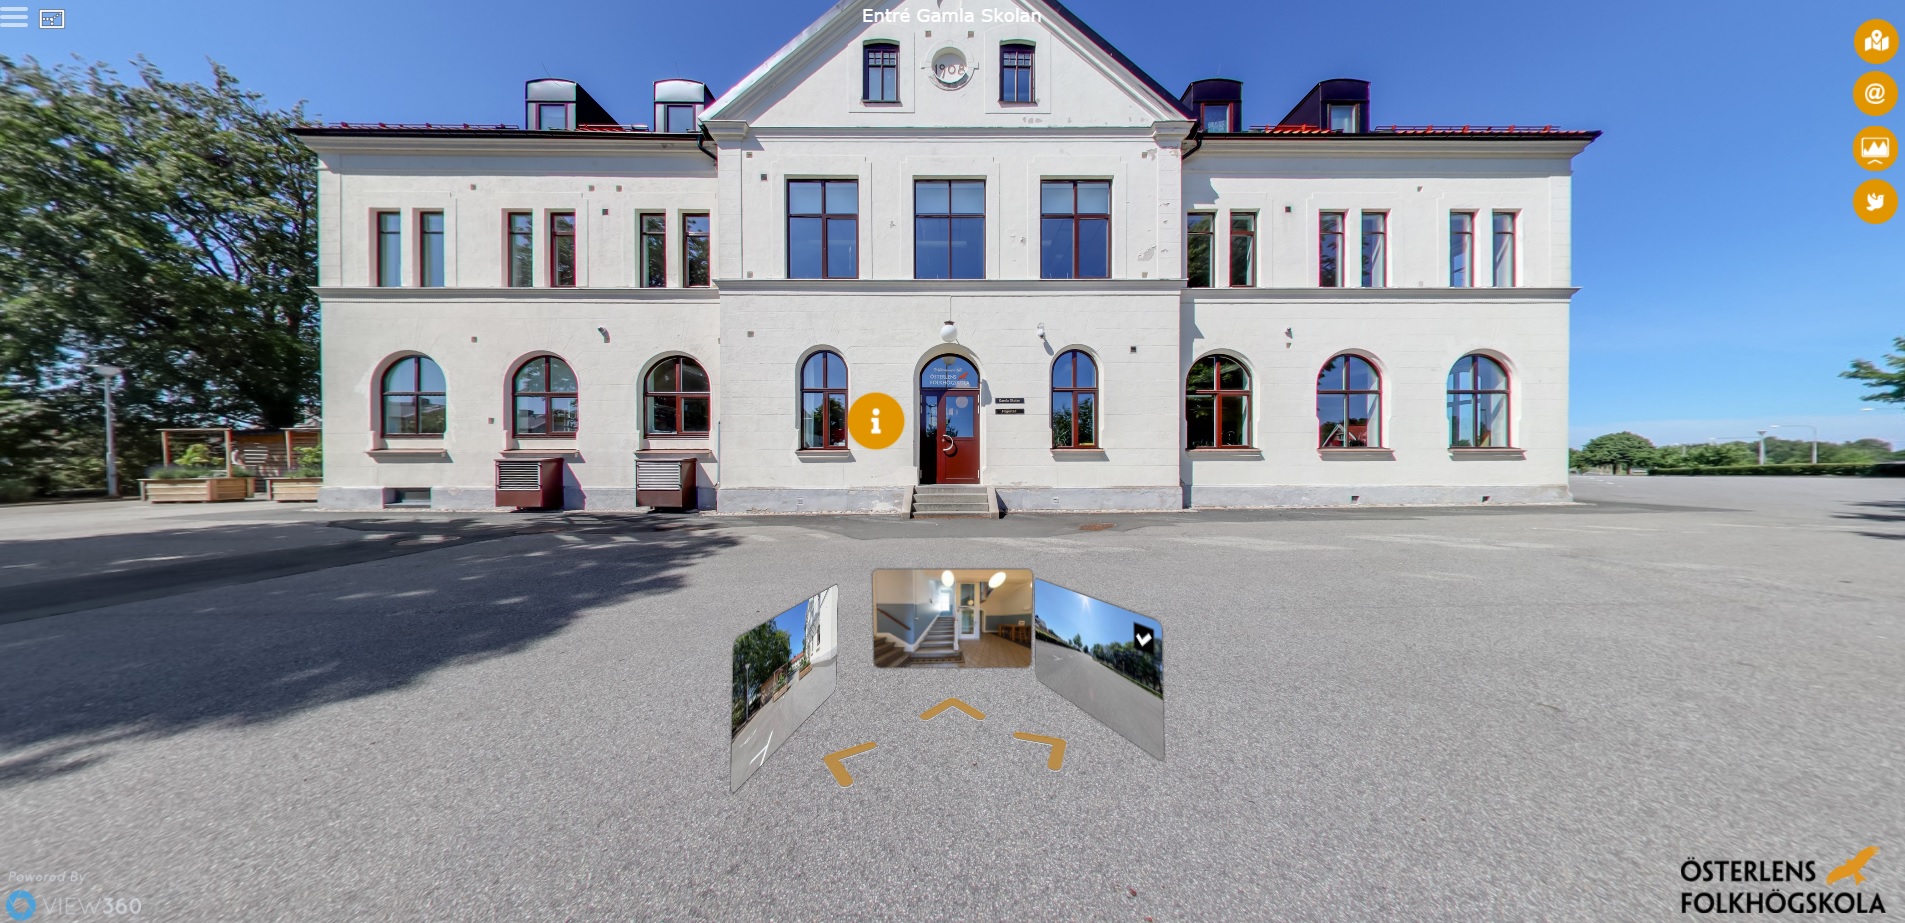 En av byggnaderna på Österlens folkhögskolas virtuella rundtur, pilar framför för att klicka på för att vandra runt.